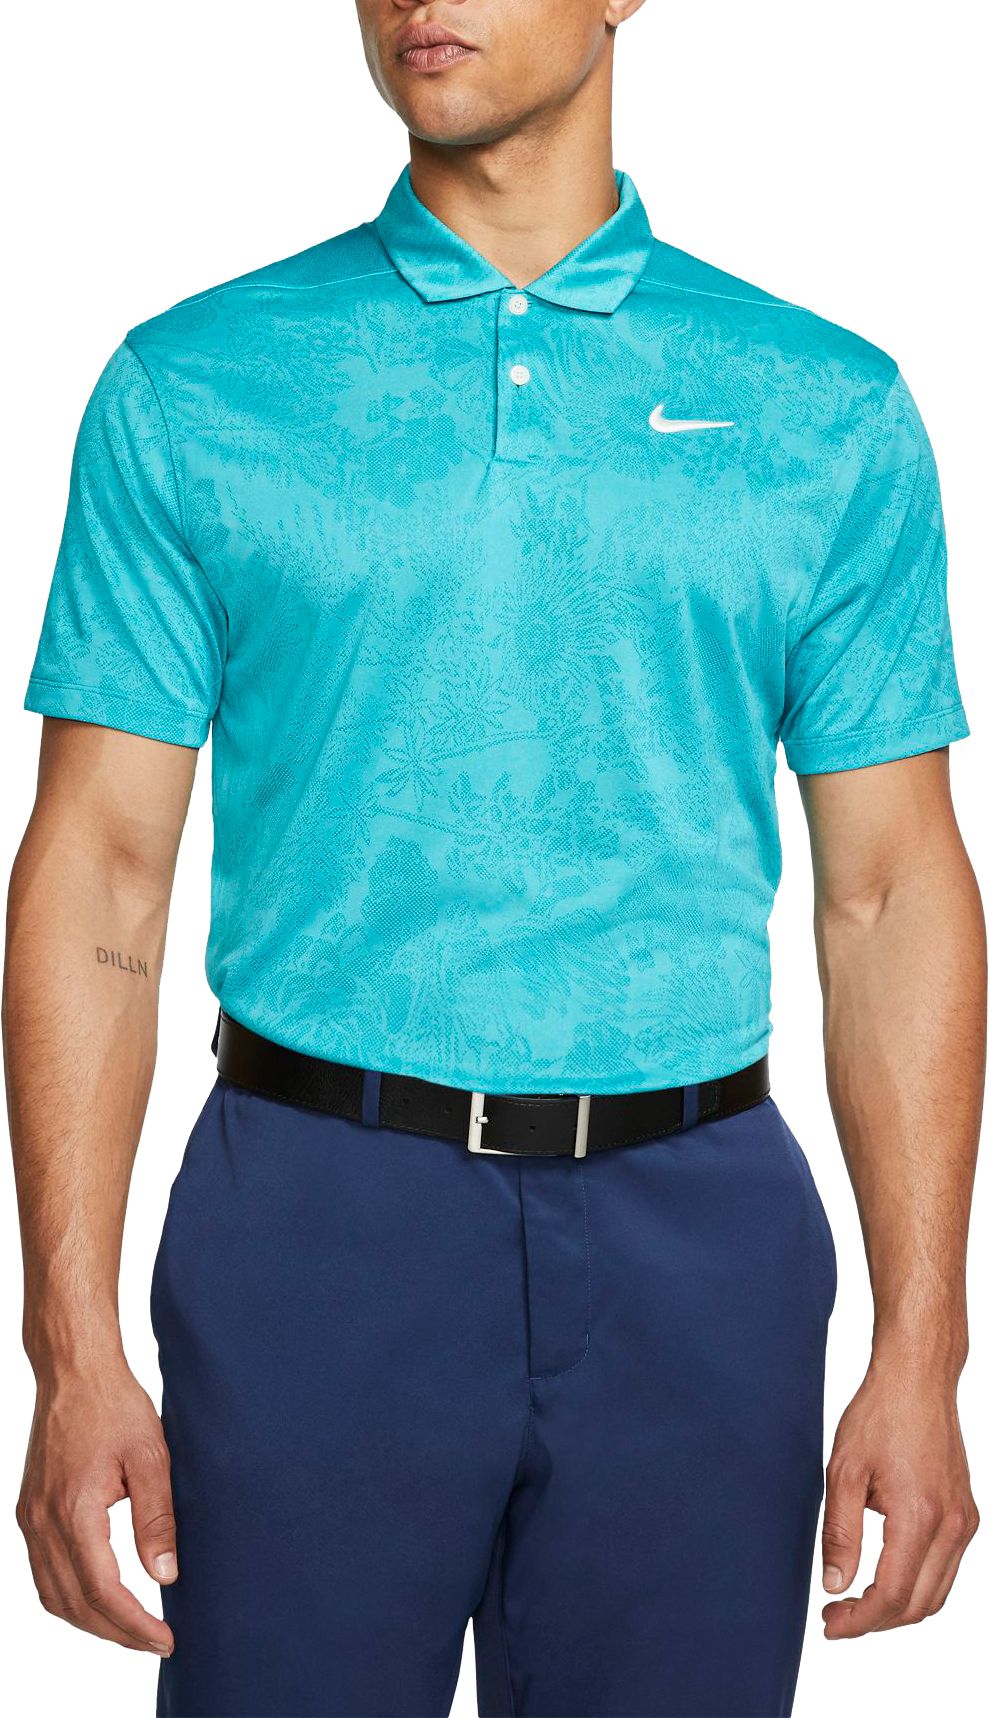 Nike Men's Vapor Jacquard Golf Polo - .97 - .97